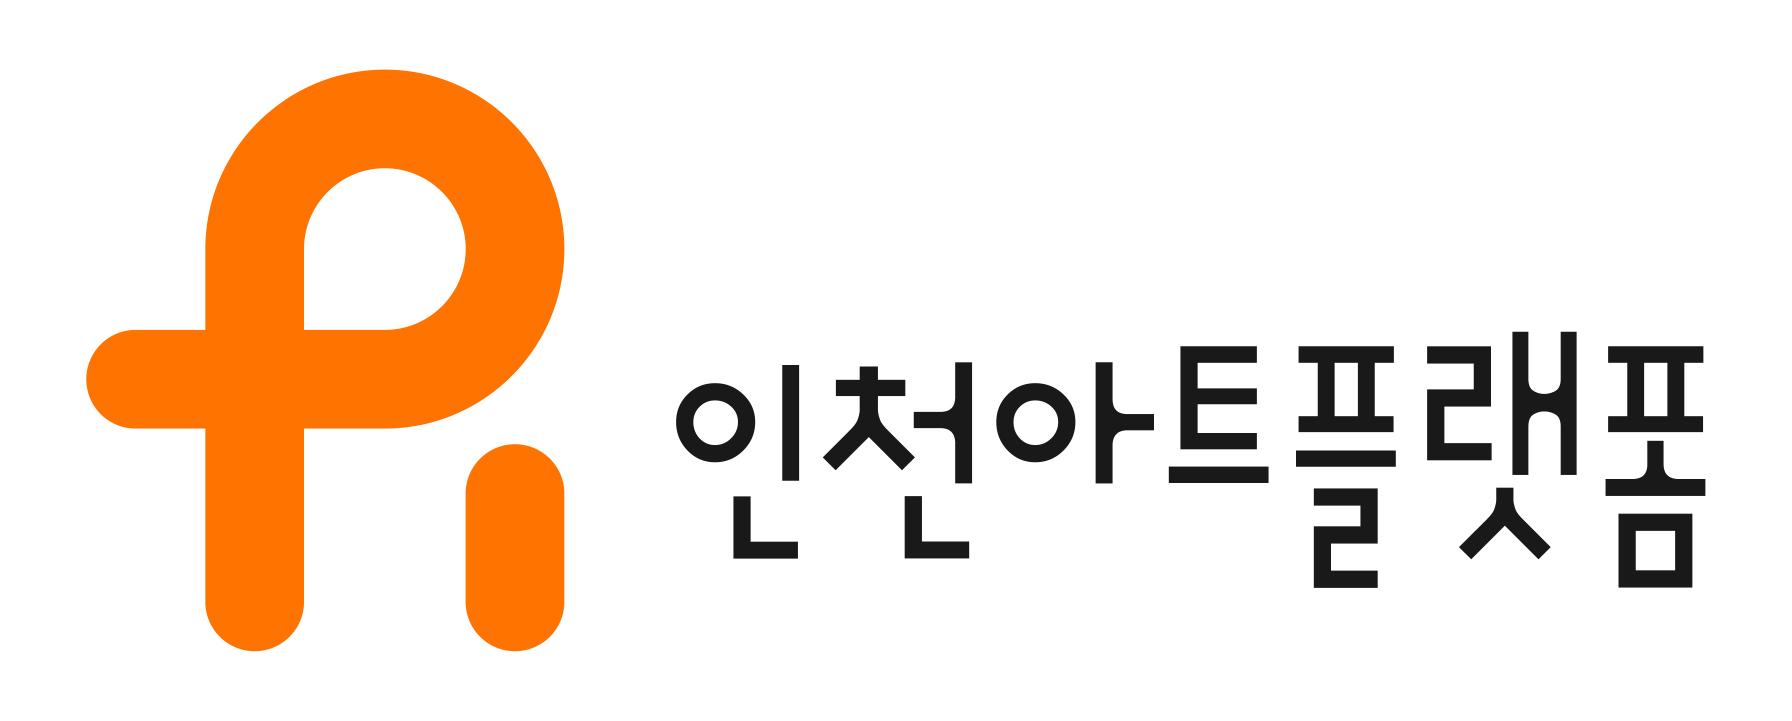 인천아트플랫폼 (새창열림)